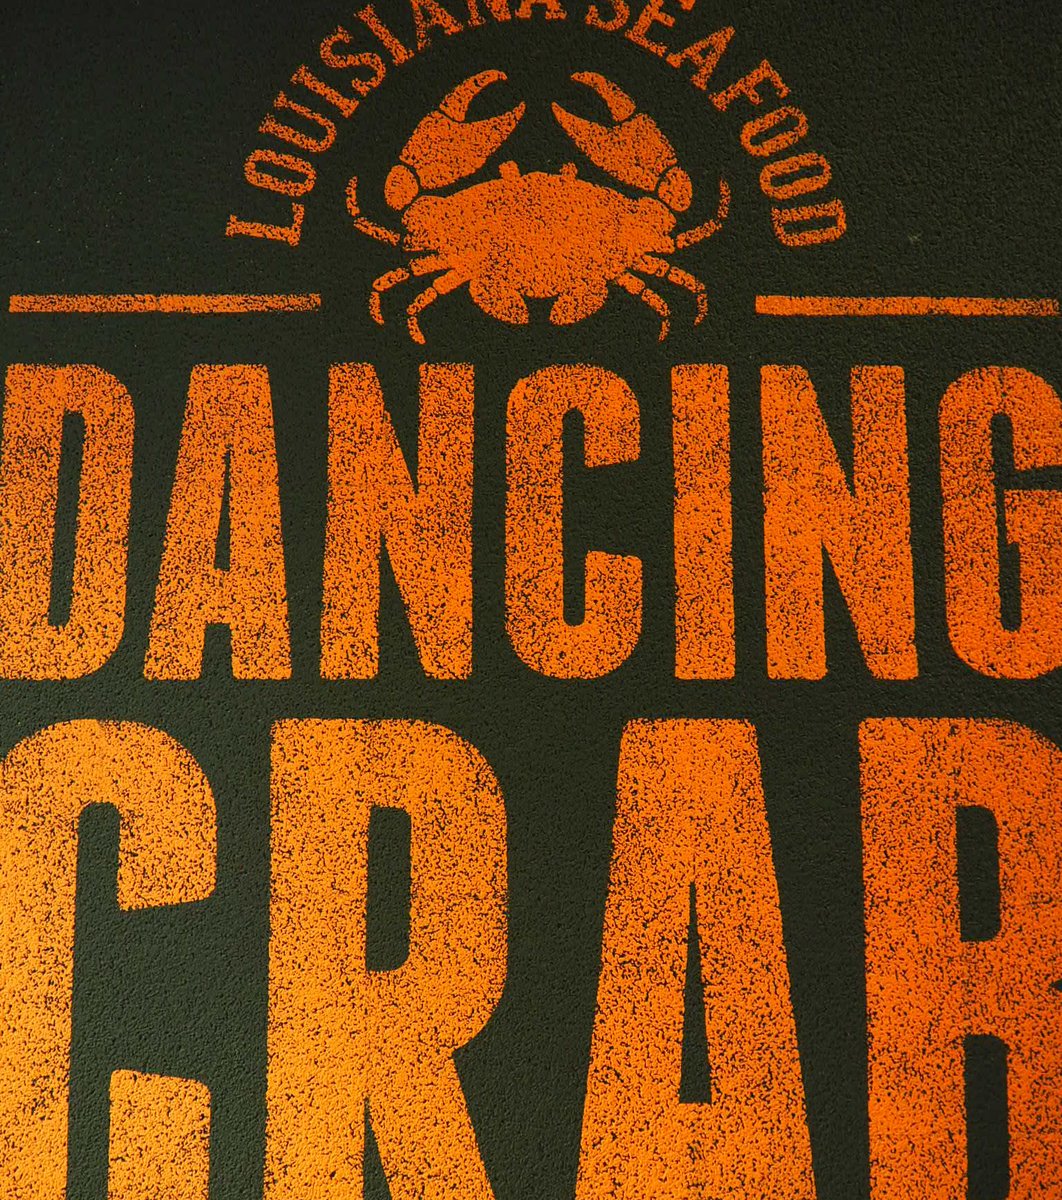 ダンシング クラブ 東京（DANCING CRAB）